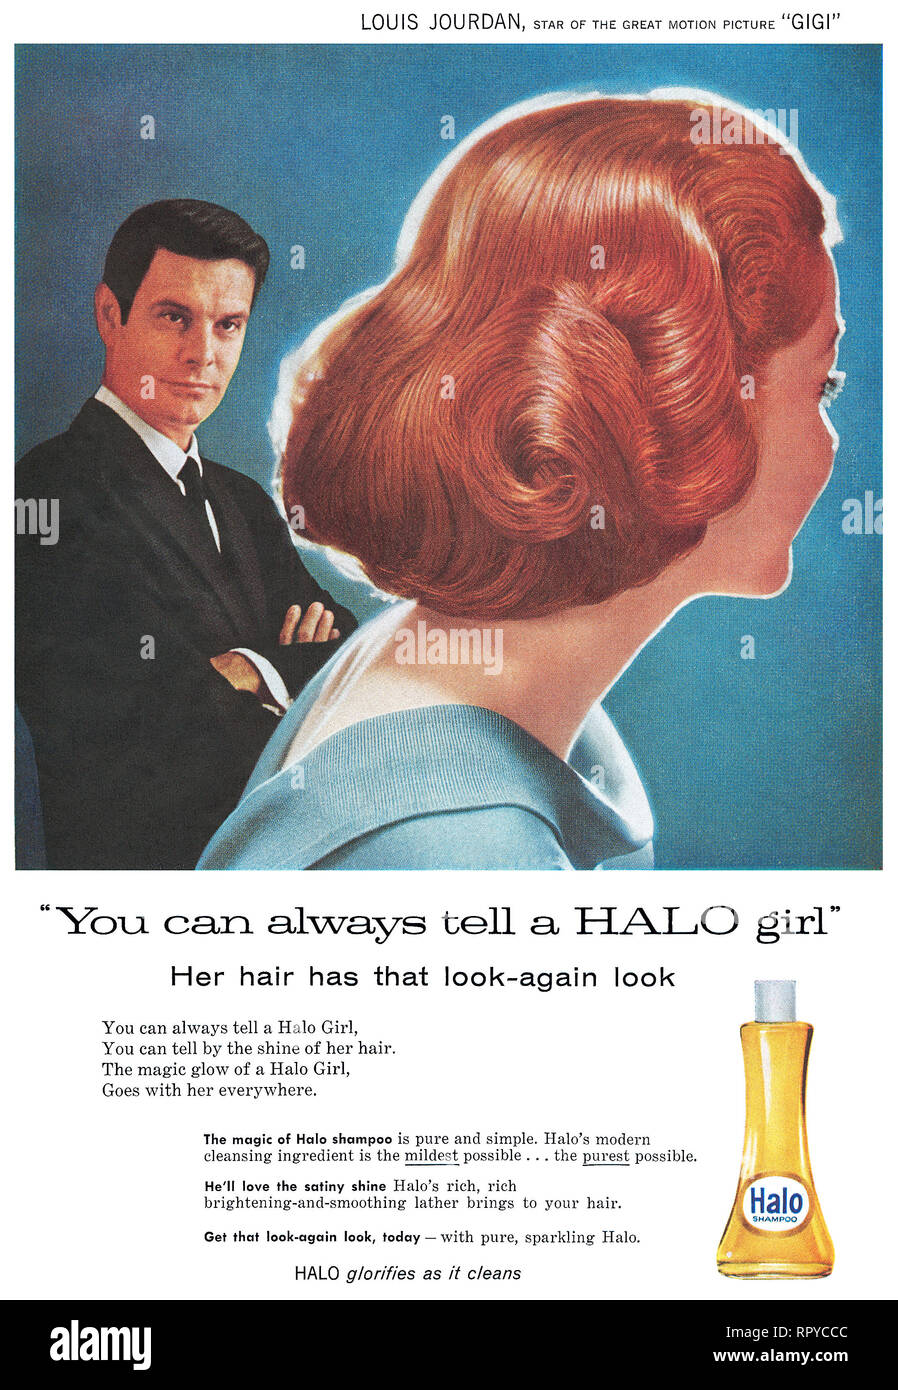 1959 britischen Werbung für Halo Shampoo, Schauspieler Louis Jourdan. Stockfoto